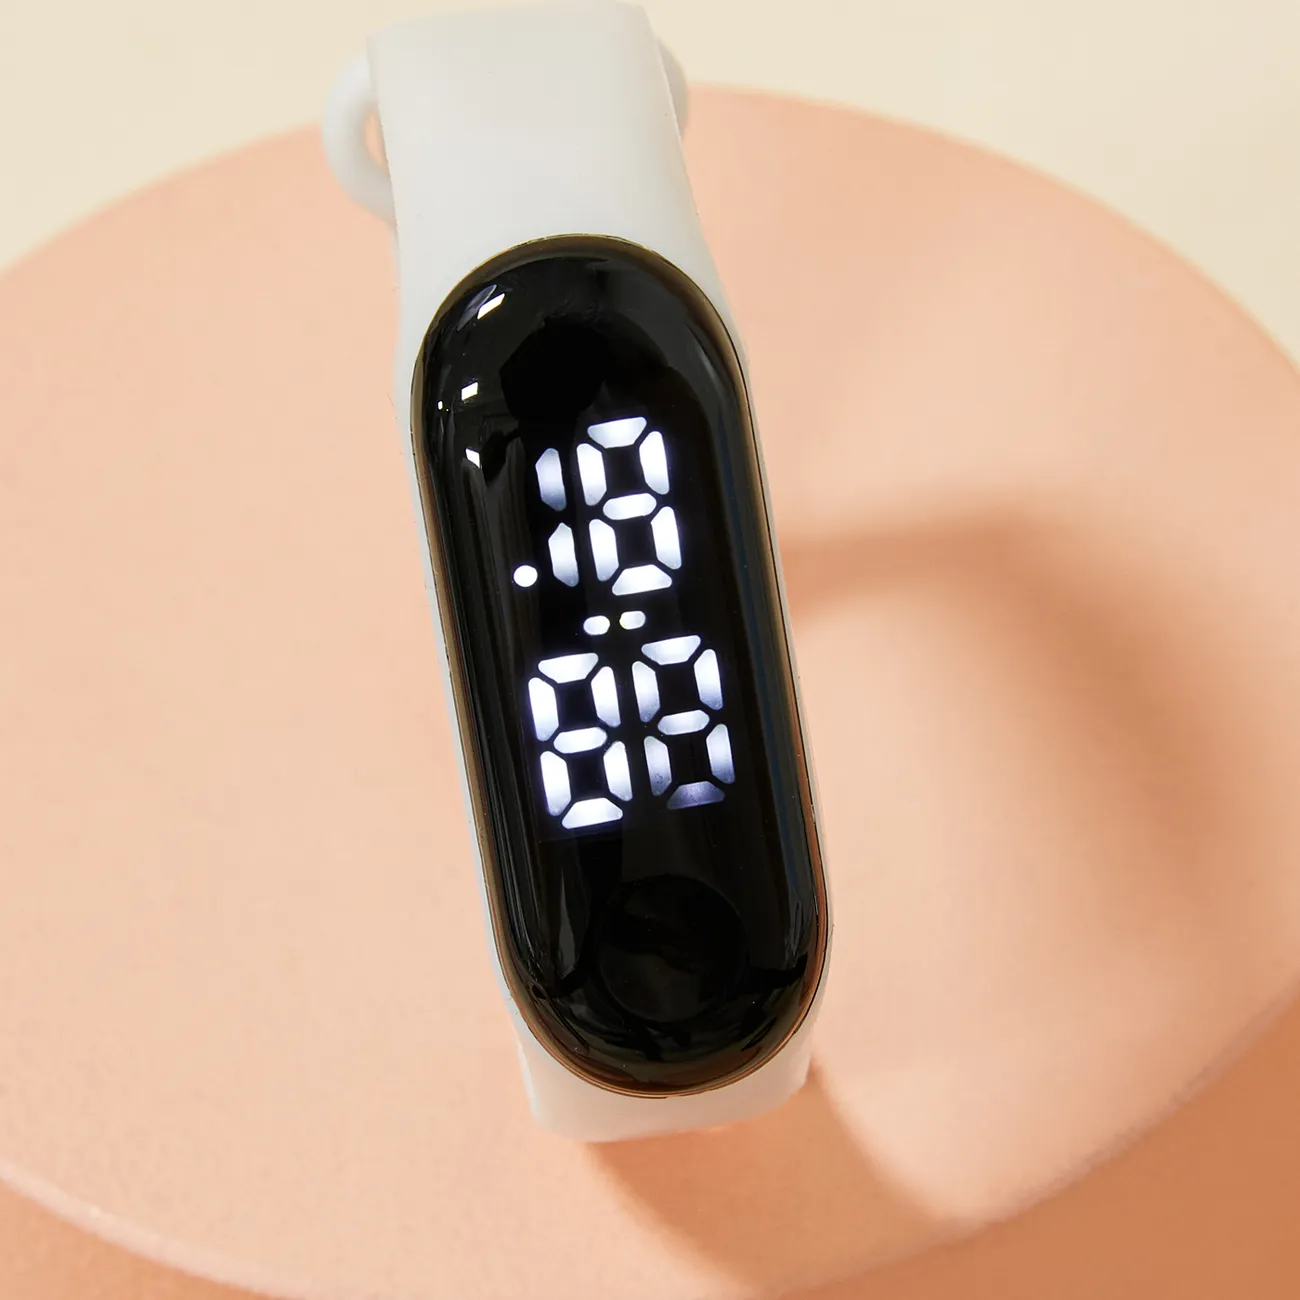 reloj led para niños pequeños / niños reloj electrónico digital inteligente de color puro (con caja de embalaje) Blanco big image 1